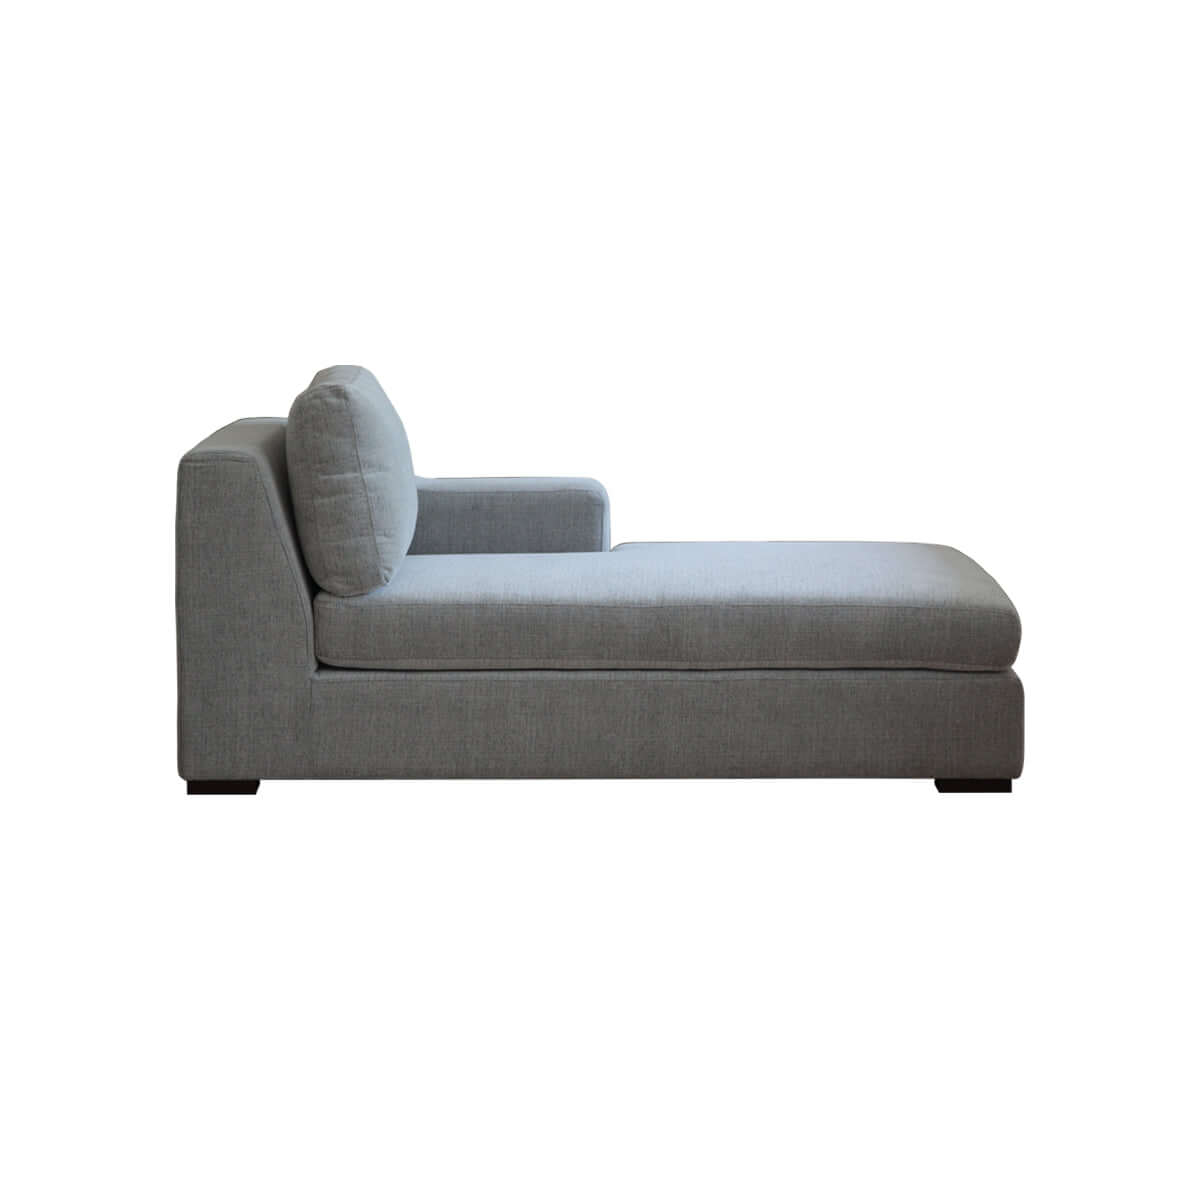 Presidio daybed sofa with prestigious accent arm furniture